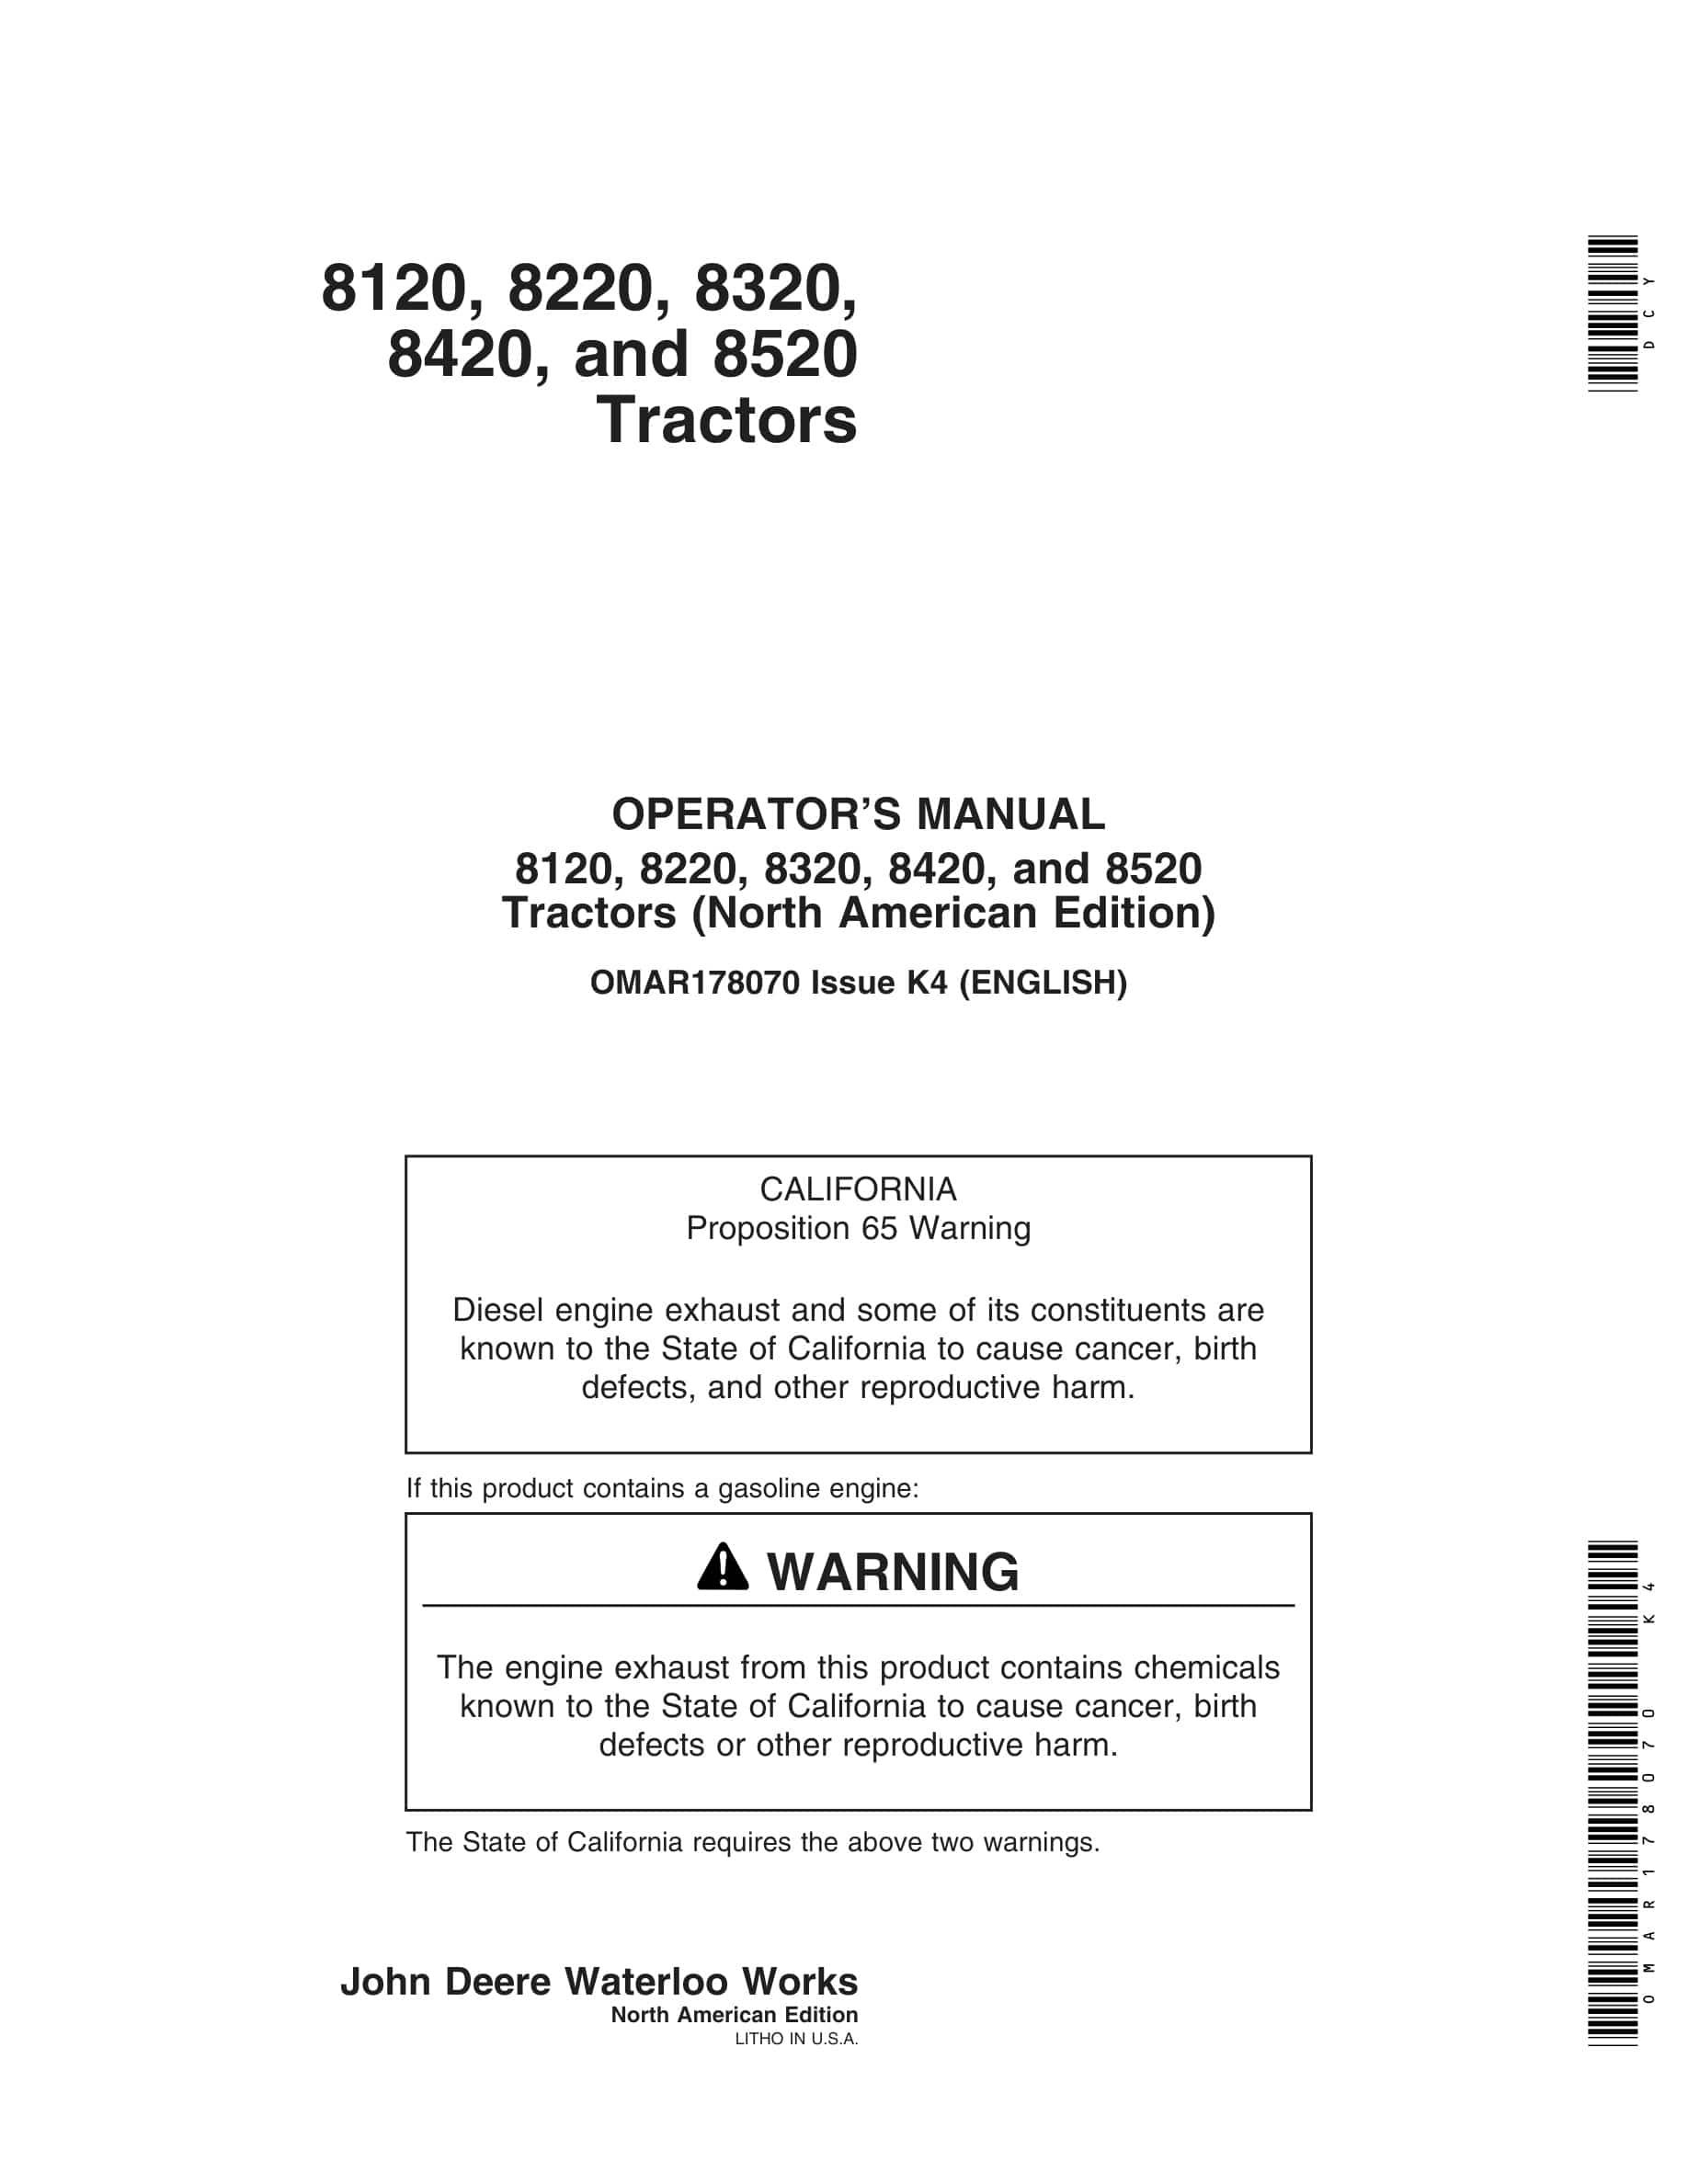 John Deere 8120, 8220, 8320, 8420, and 8520 Tractor Operator Manual OMAR178070-1